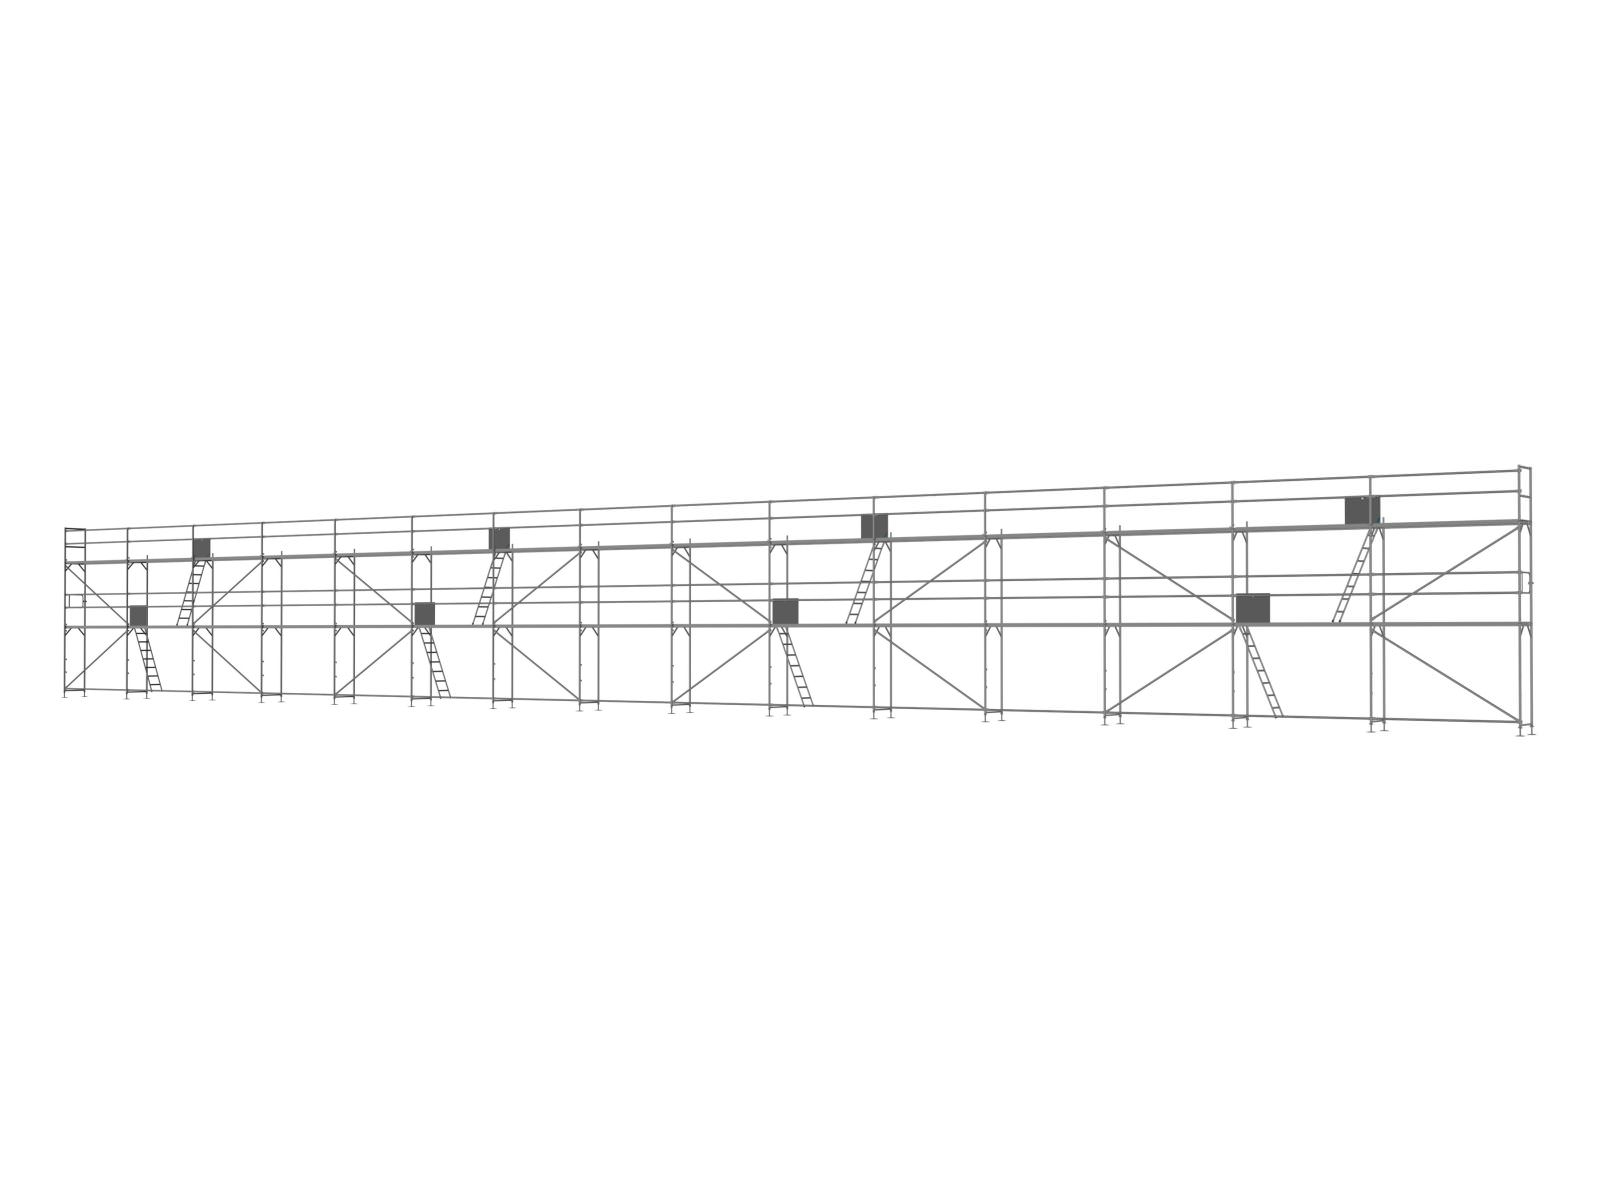 Stahl Traufseitengerüst 360 qm - 3,0 m Felder - 60 m lang - 6 m Arbeitshöhe - Basis-Gerüst inkl. Aufstieg & Befestigung